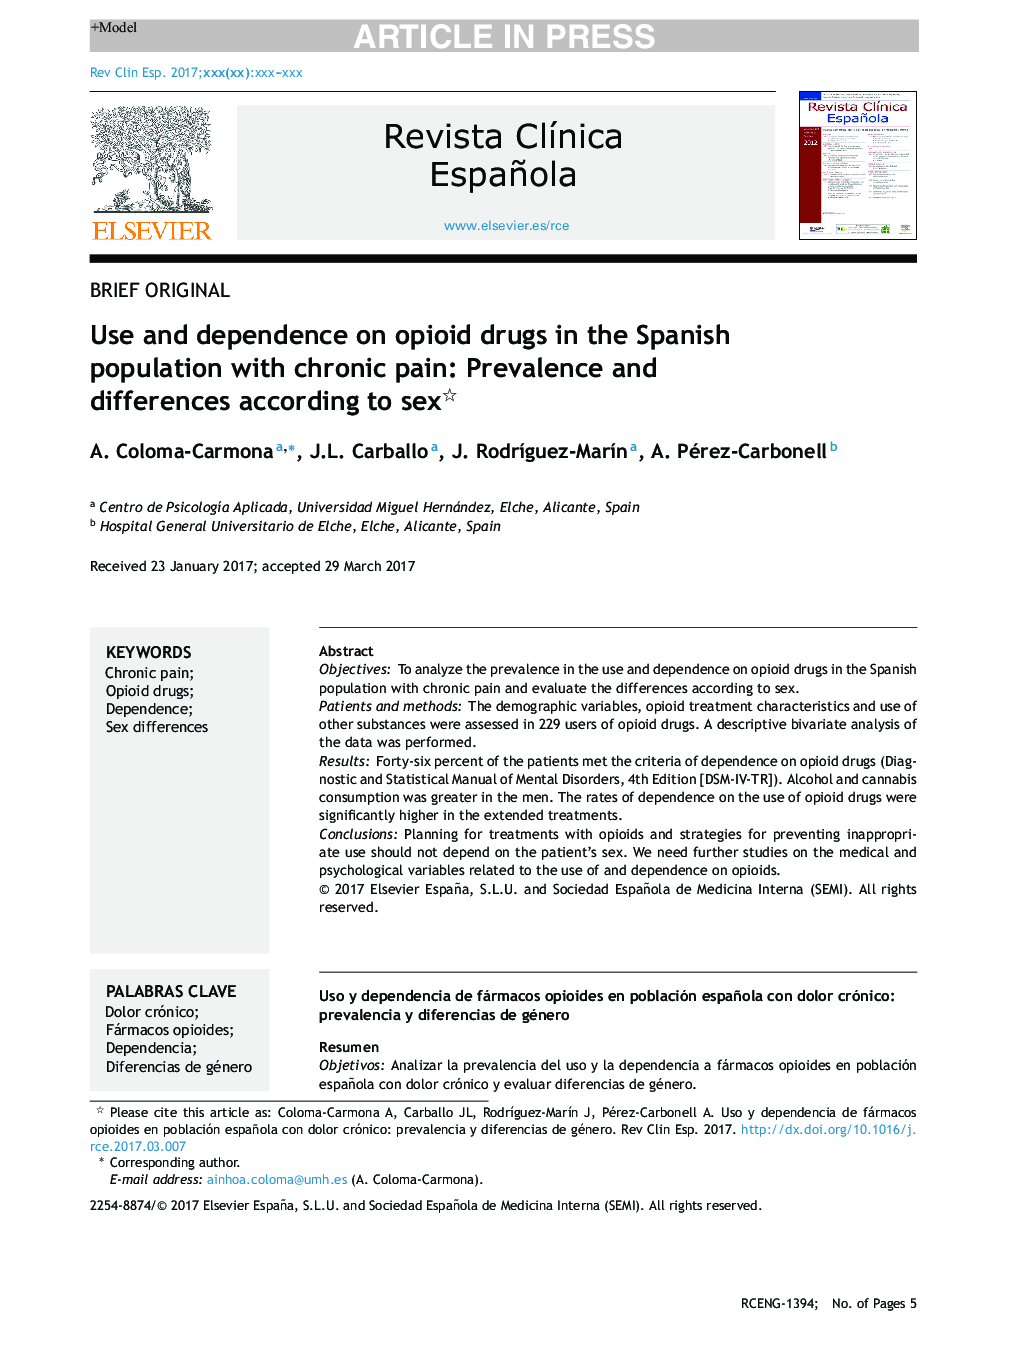 استفاده و وابستگی به مواد مخدر در جمعیت اسپانیایی با درد مزمن: شیوع و تفاوت طبق جنس 